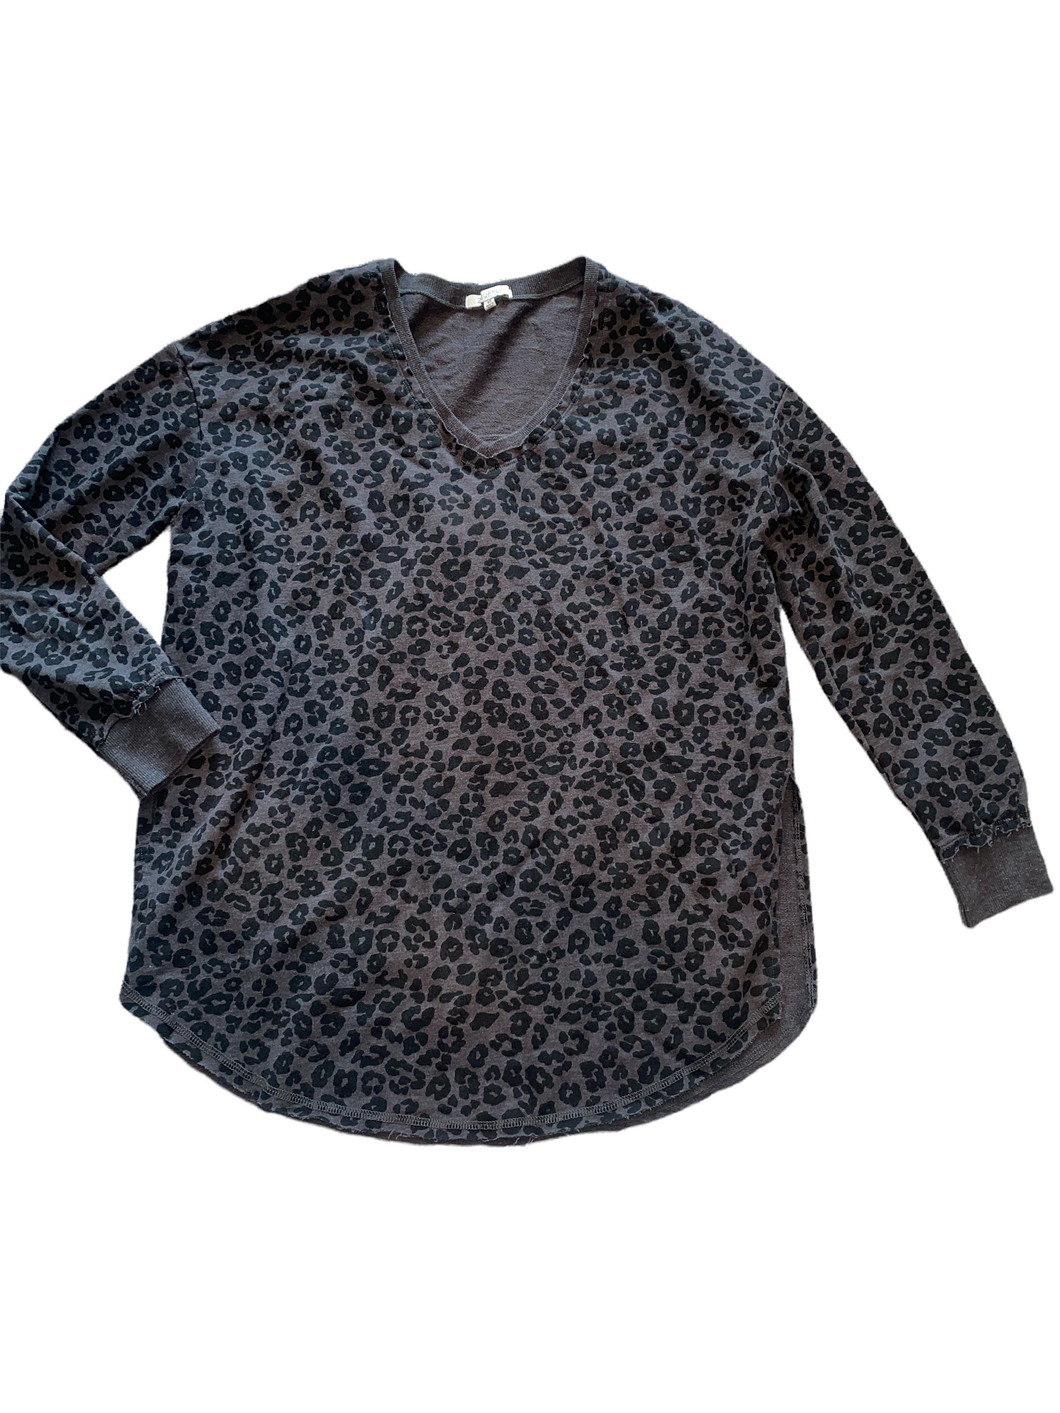 Z Supply women’s leopard print Weekender tunic top XS